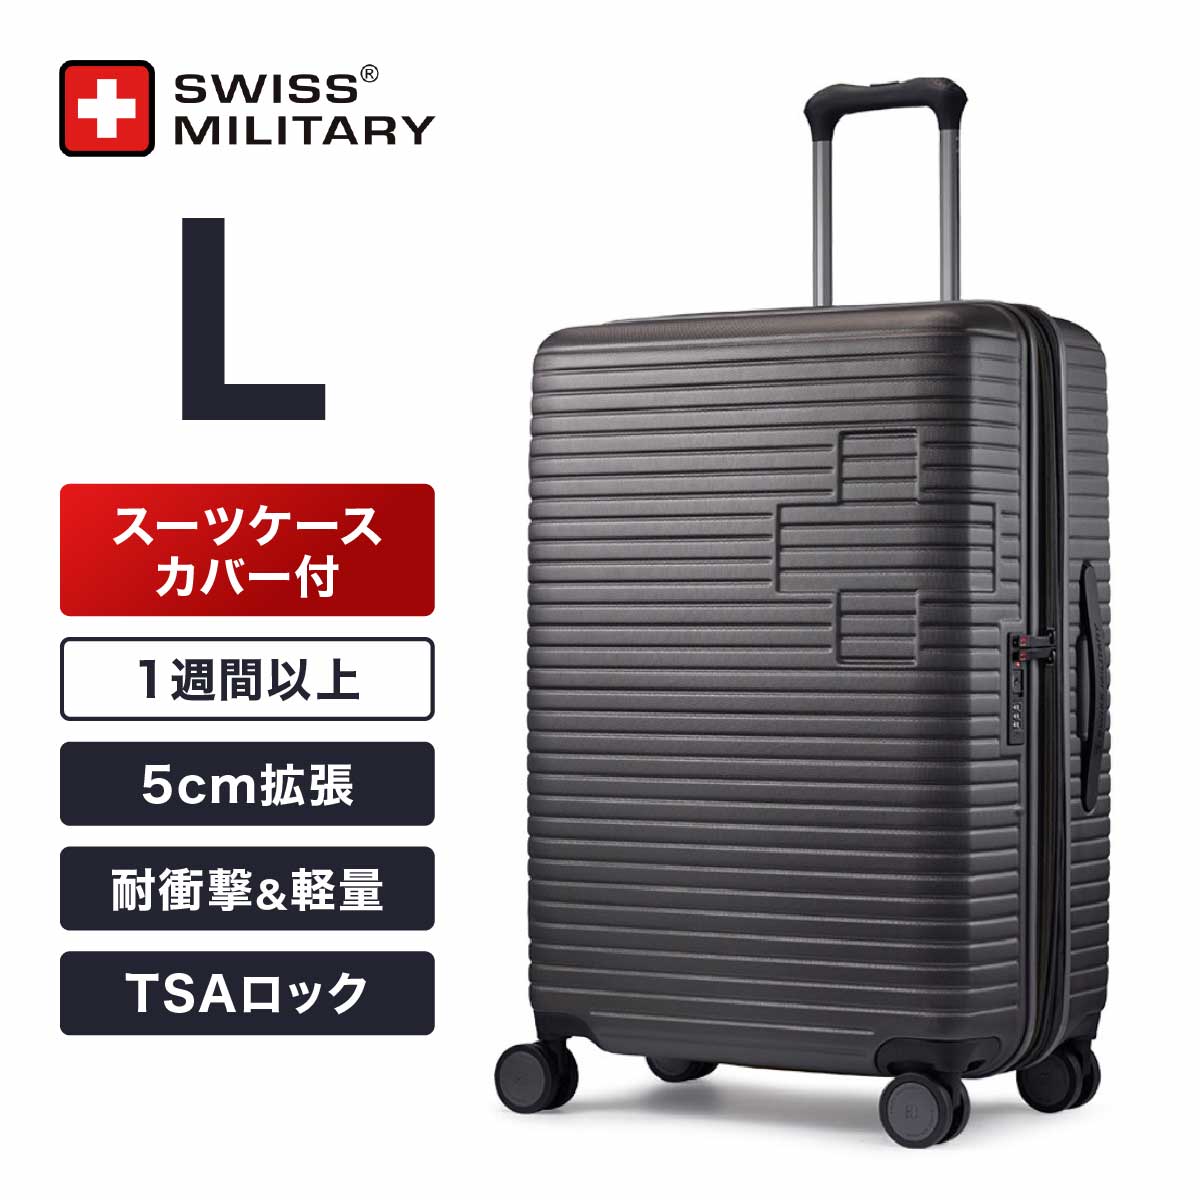 スーツケース 大型 Lサイズ 一週間以上 70cm 83L 5cm拡張 TSAロック